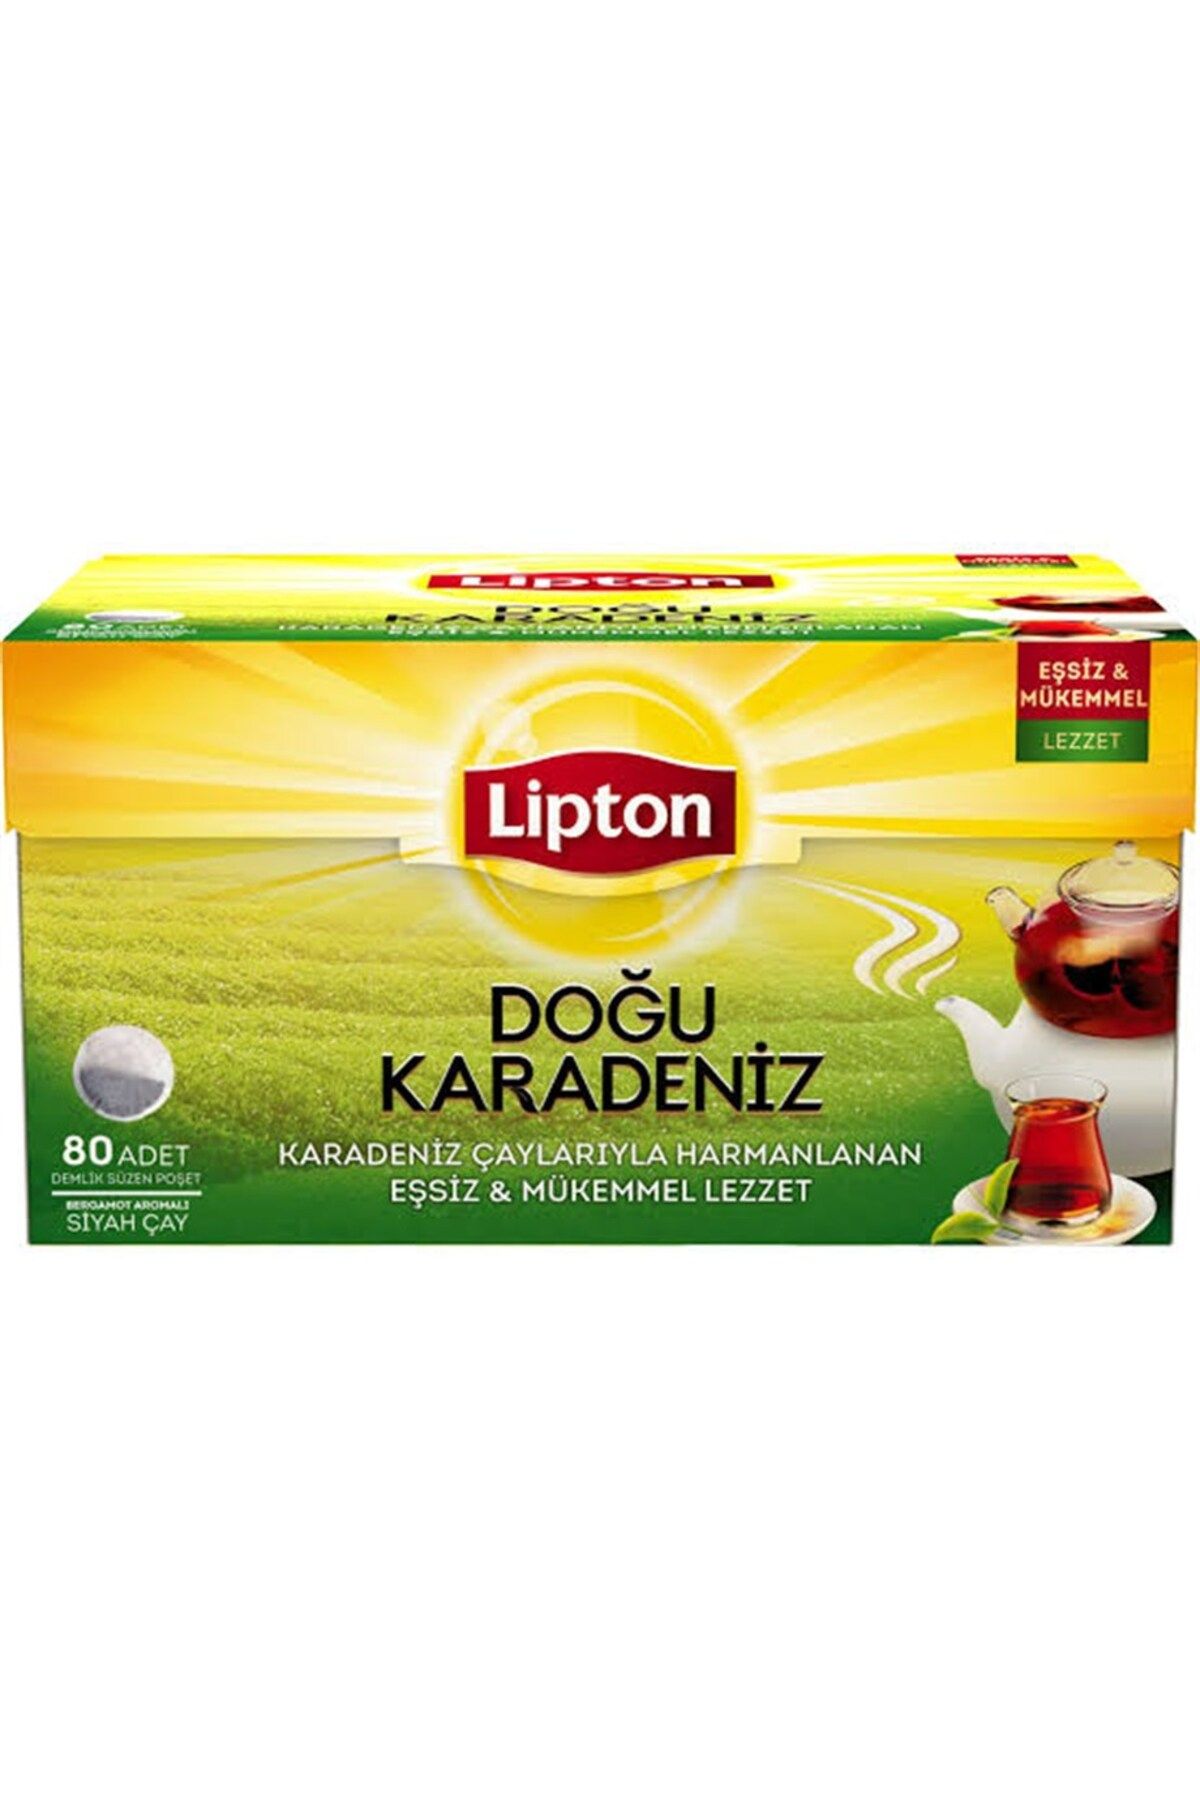 Lipton Doğu Karadeniz Demlik Poşet Çay 80li 256 gr